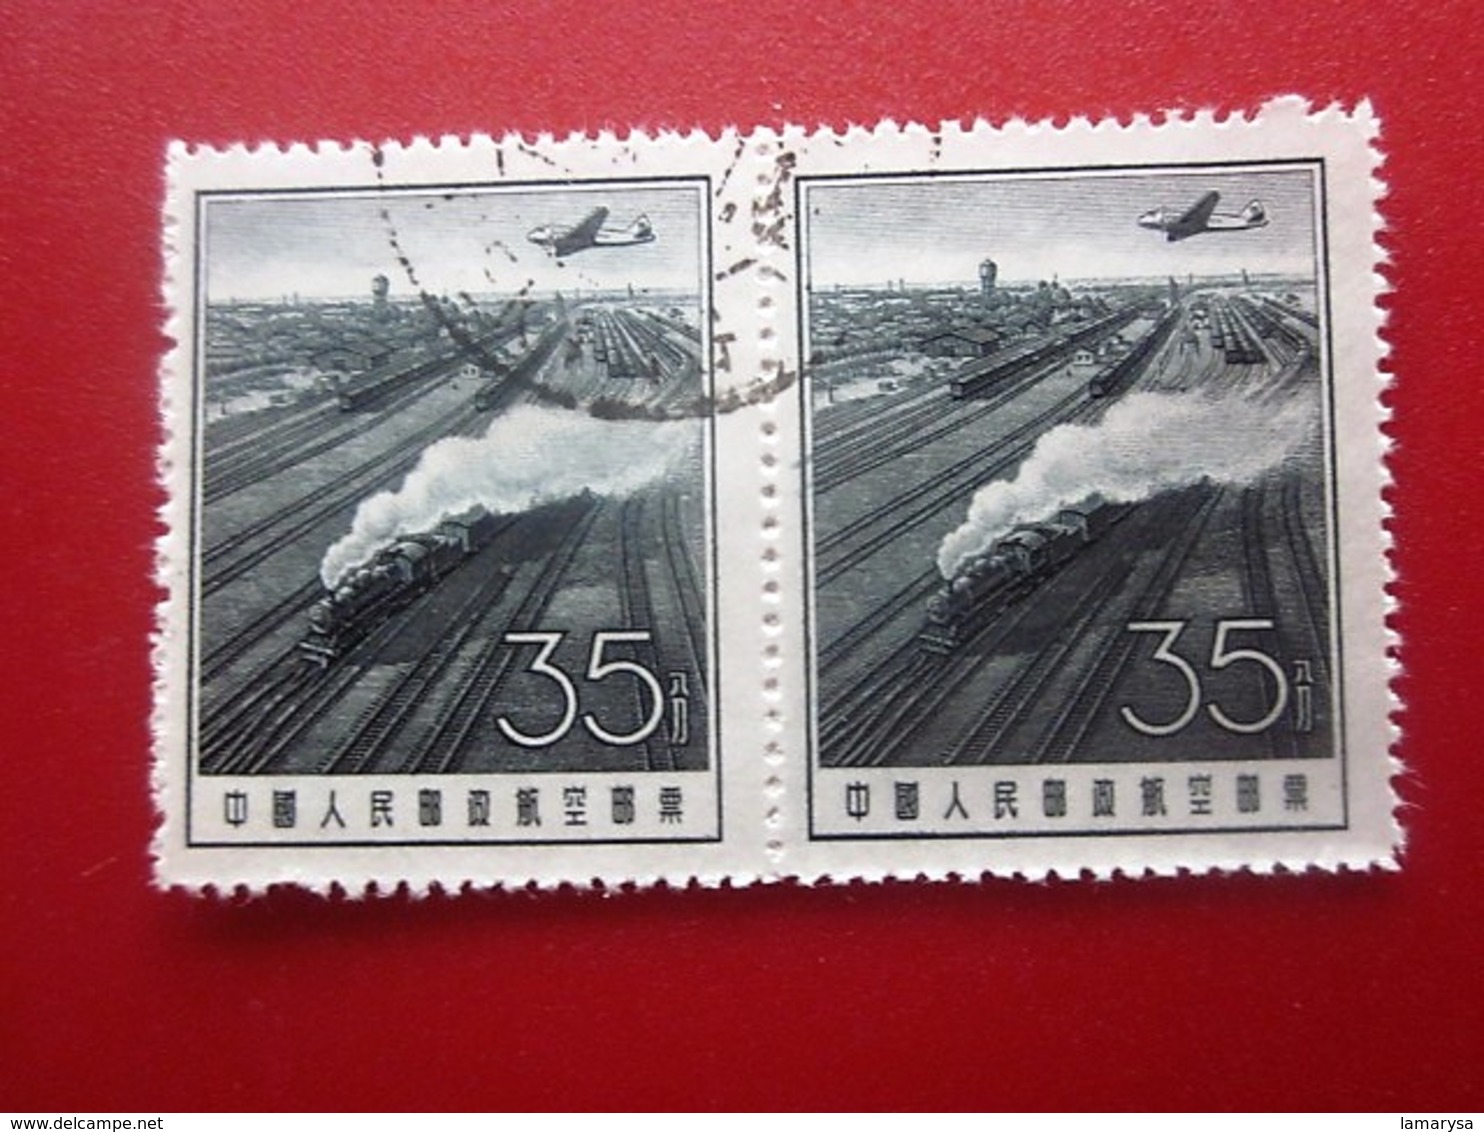 Chine Bloc 2 Timbres-Stamps-République Populaire-Poste Aérienne-Asia China-Popular Republic Airmail-亚洲中国第4区邮票热门共和国航空邮件 - Airmail